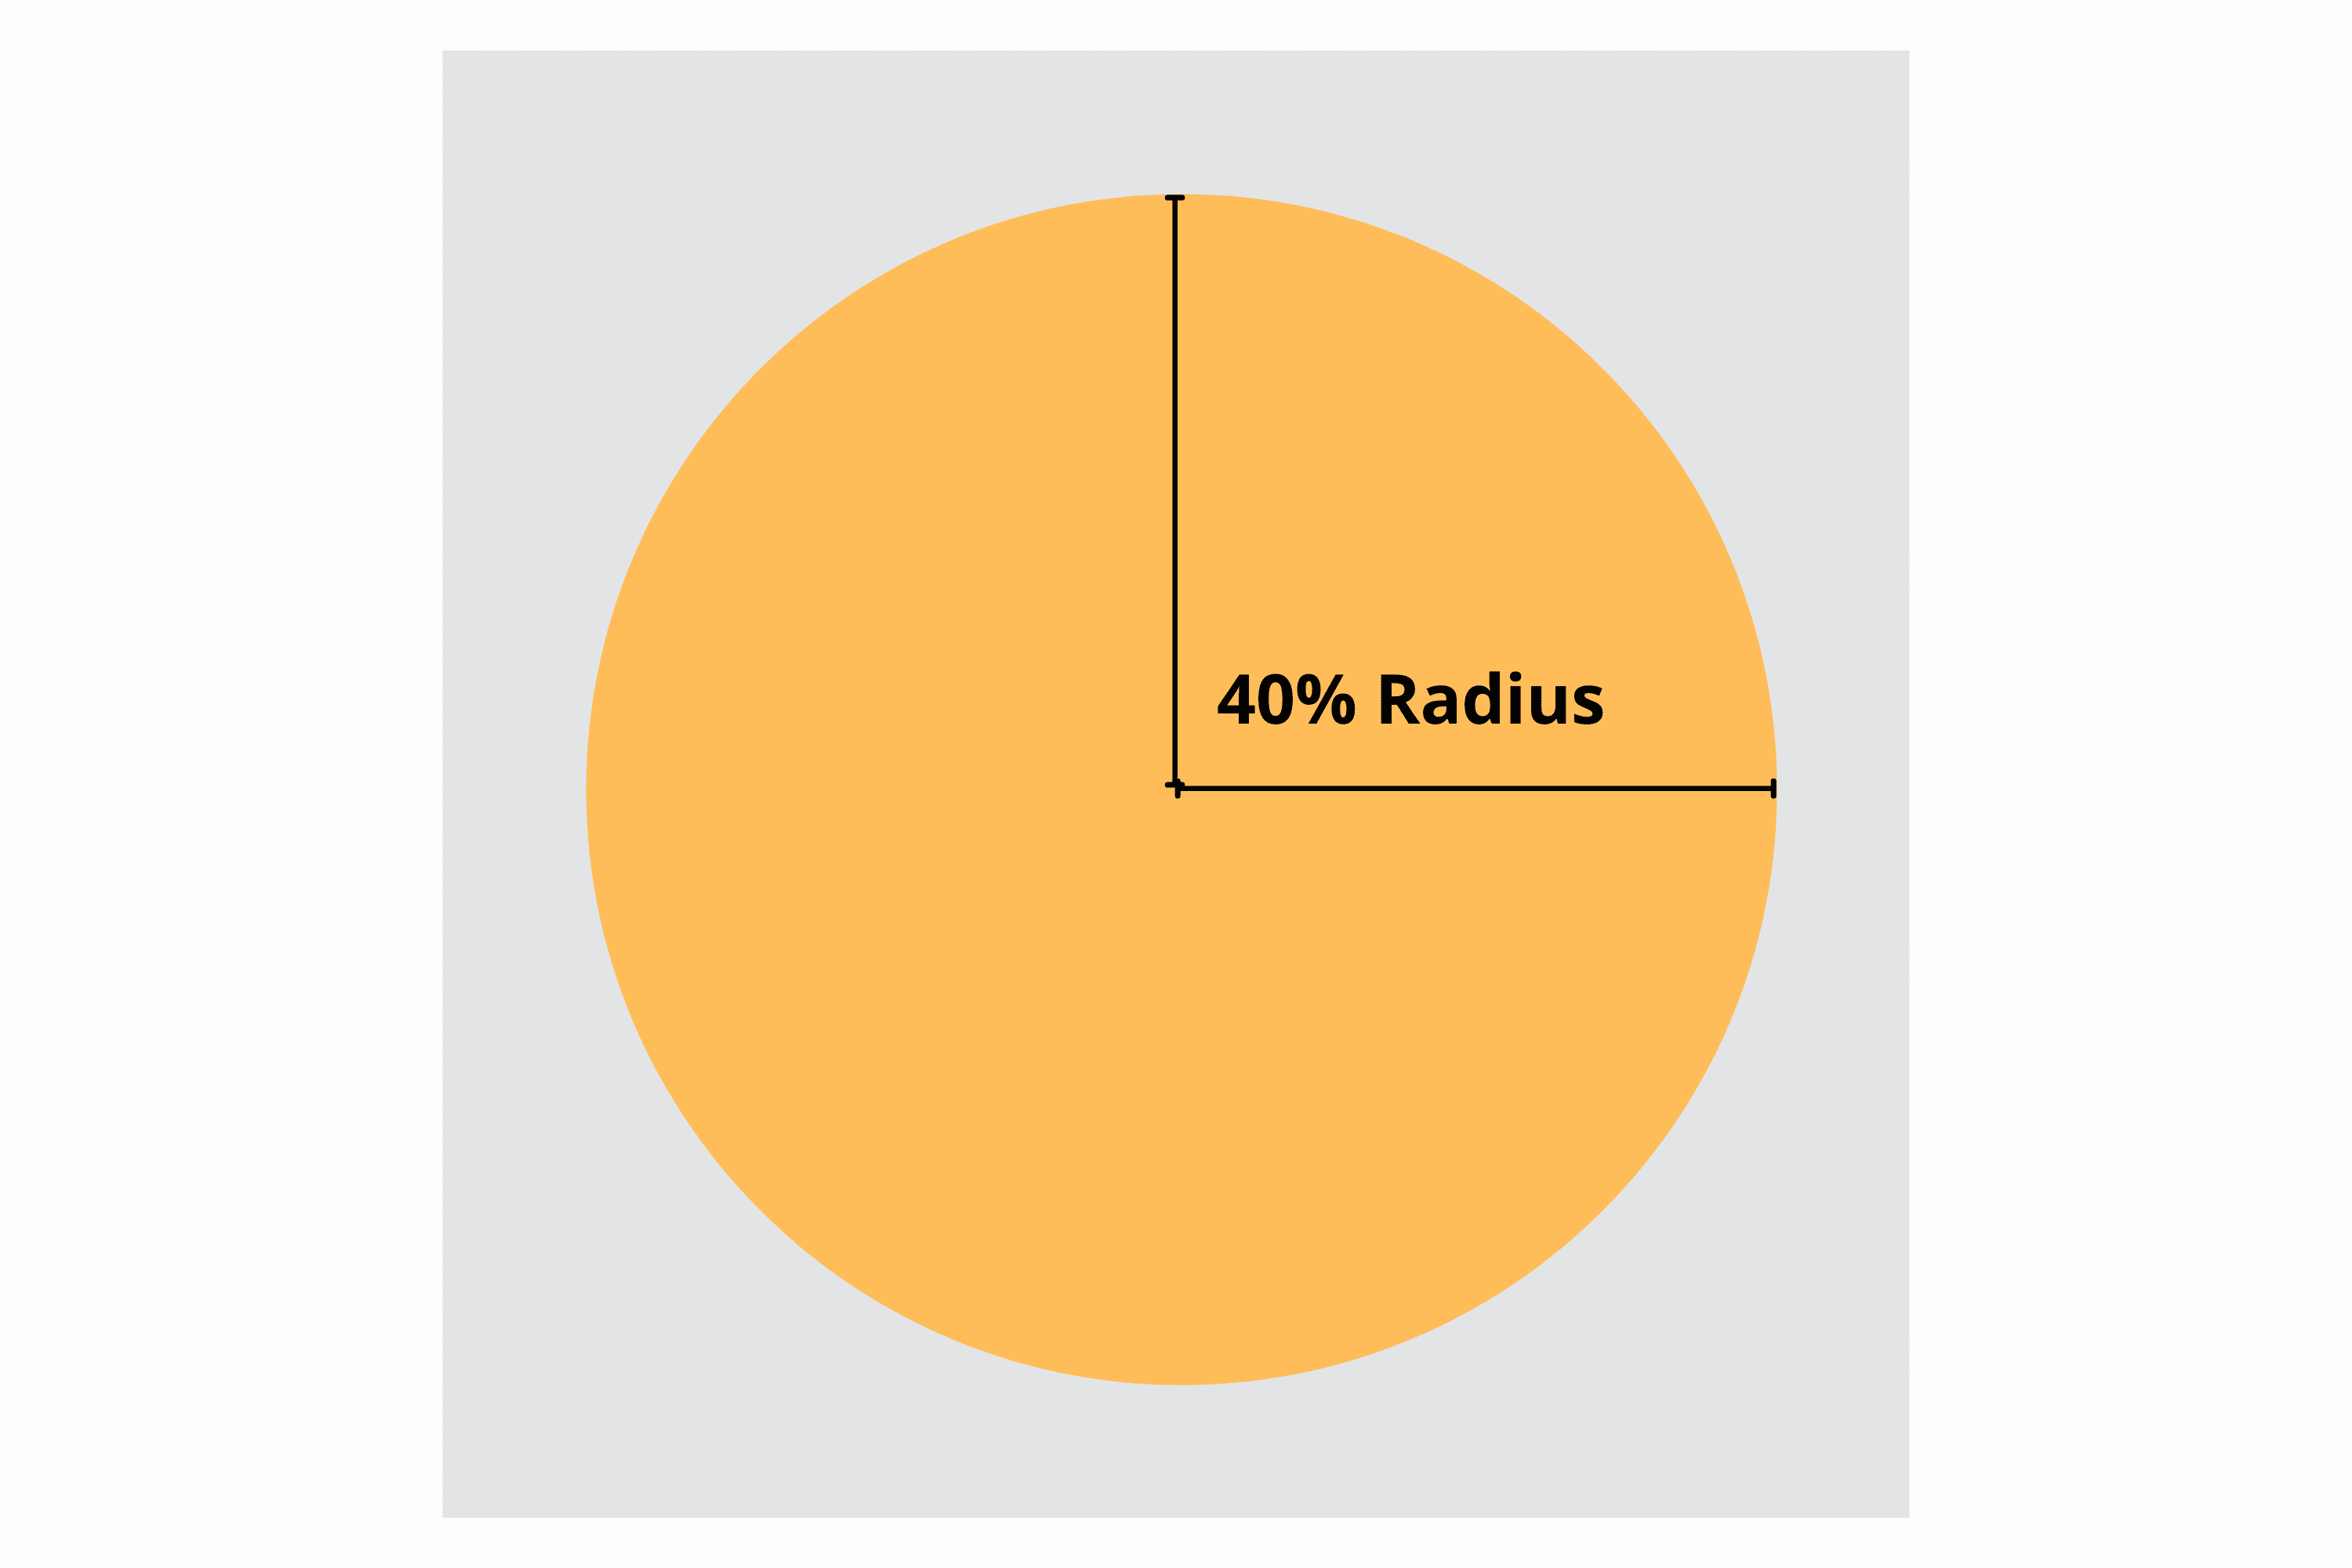 Безопасная зона отмечена кругом радиусом 40 процентов с центром внутри квадратного значка.